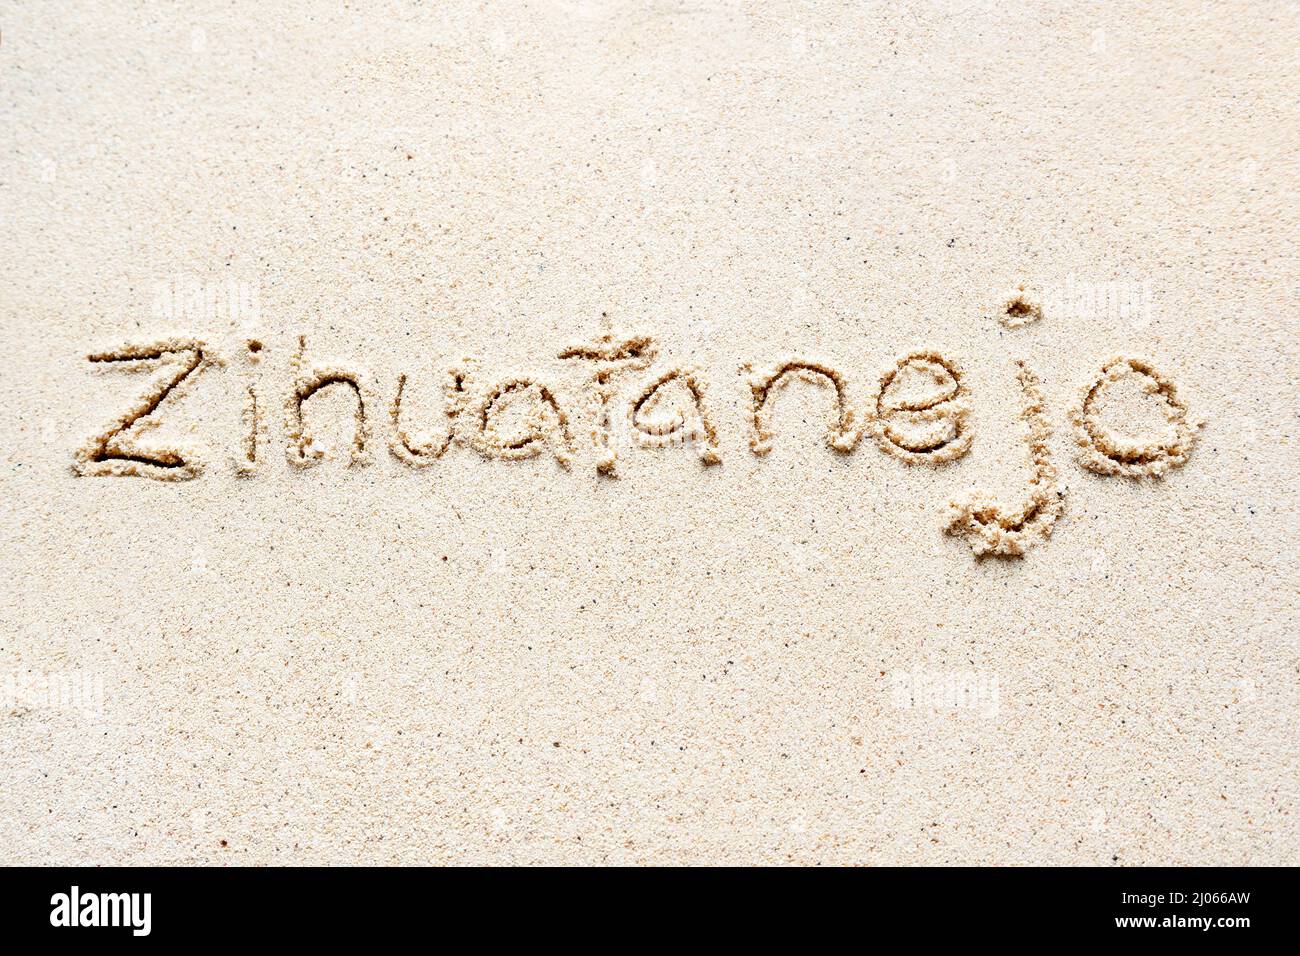 Handschriftliche Worte 'Zihuatanejo' auf Sand am Strand Stockfoto